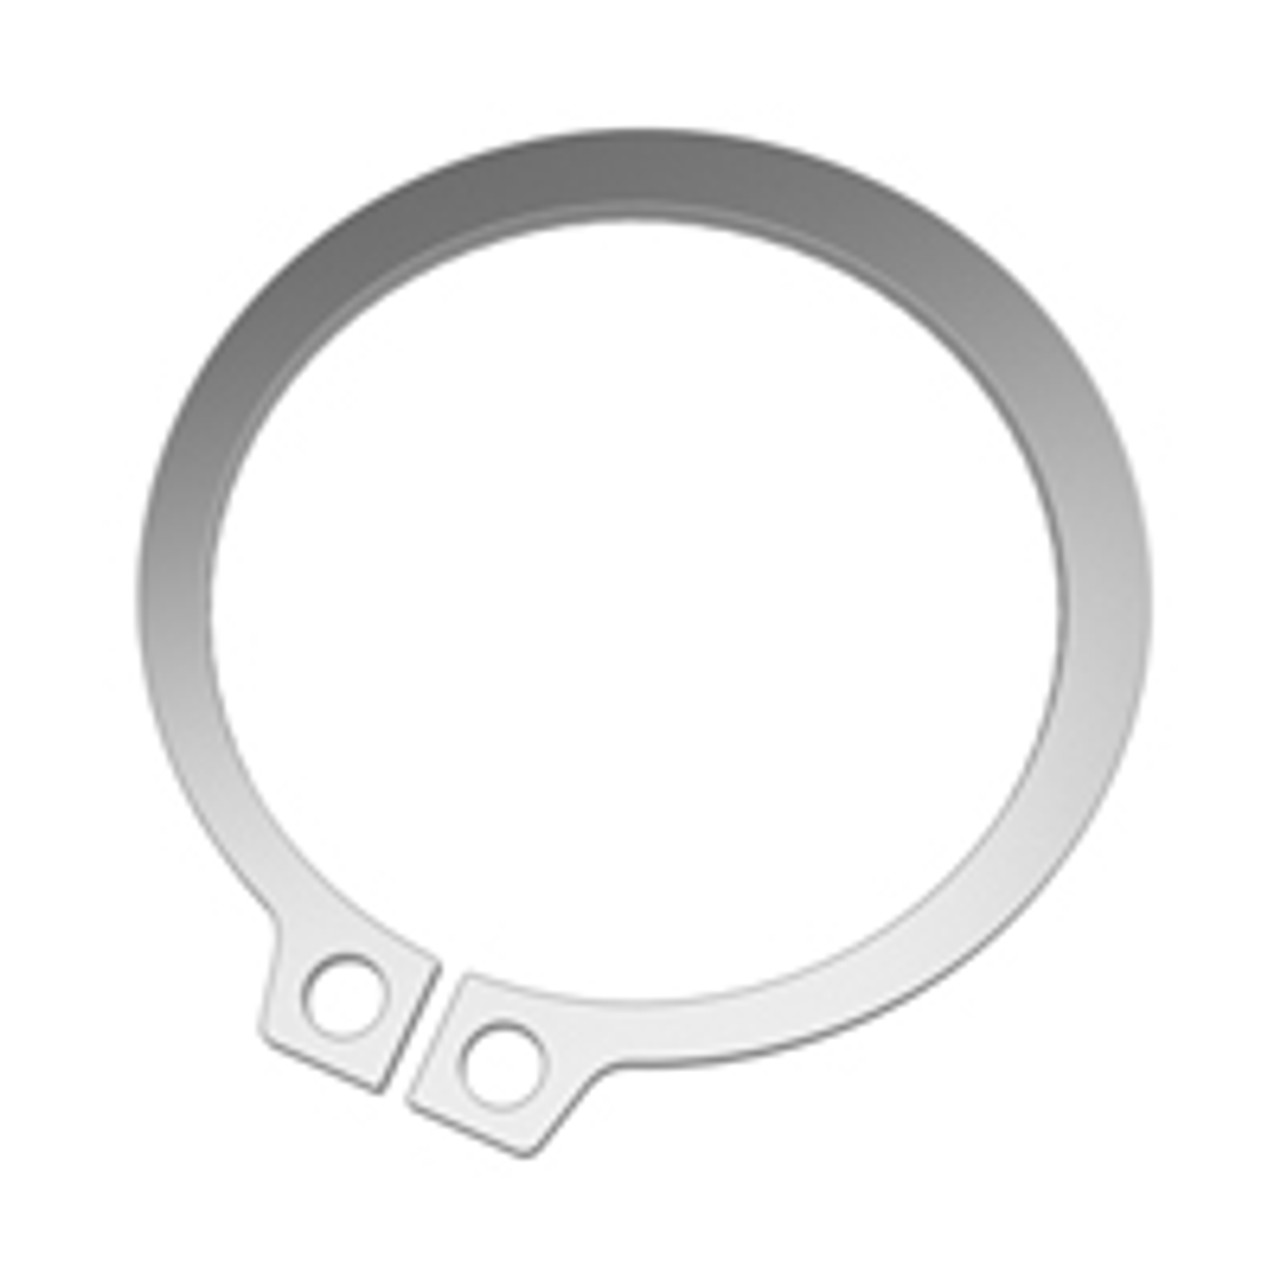 External SAE Stainless Standard Retaining Ring  SH-0131-H